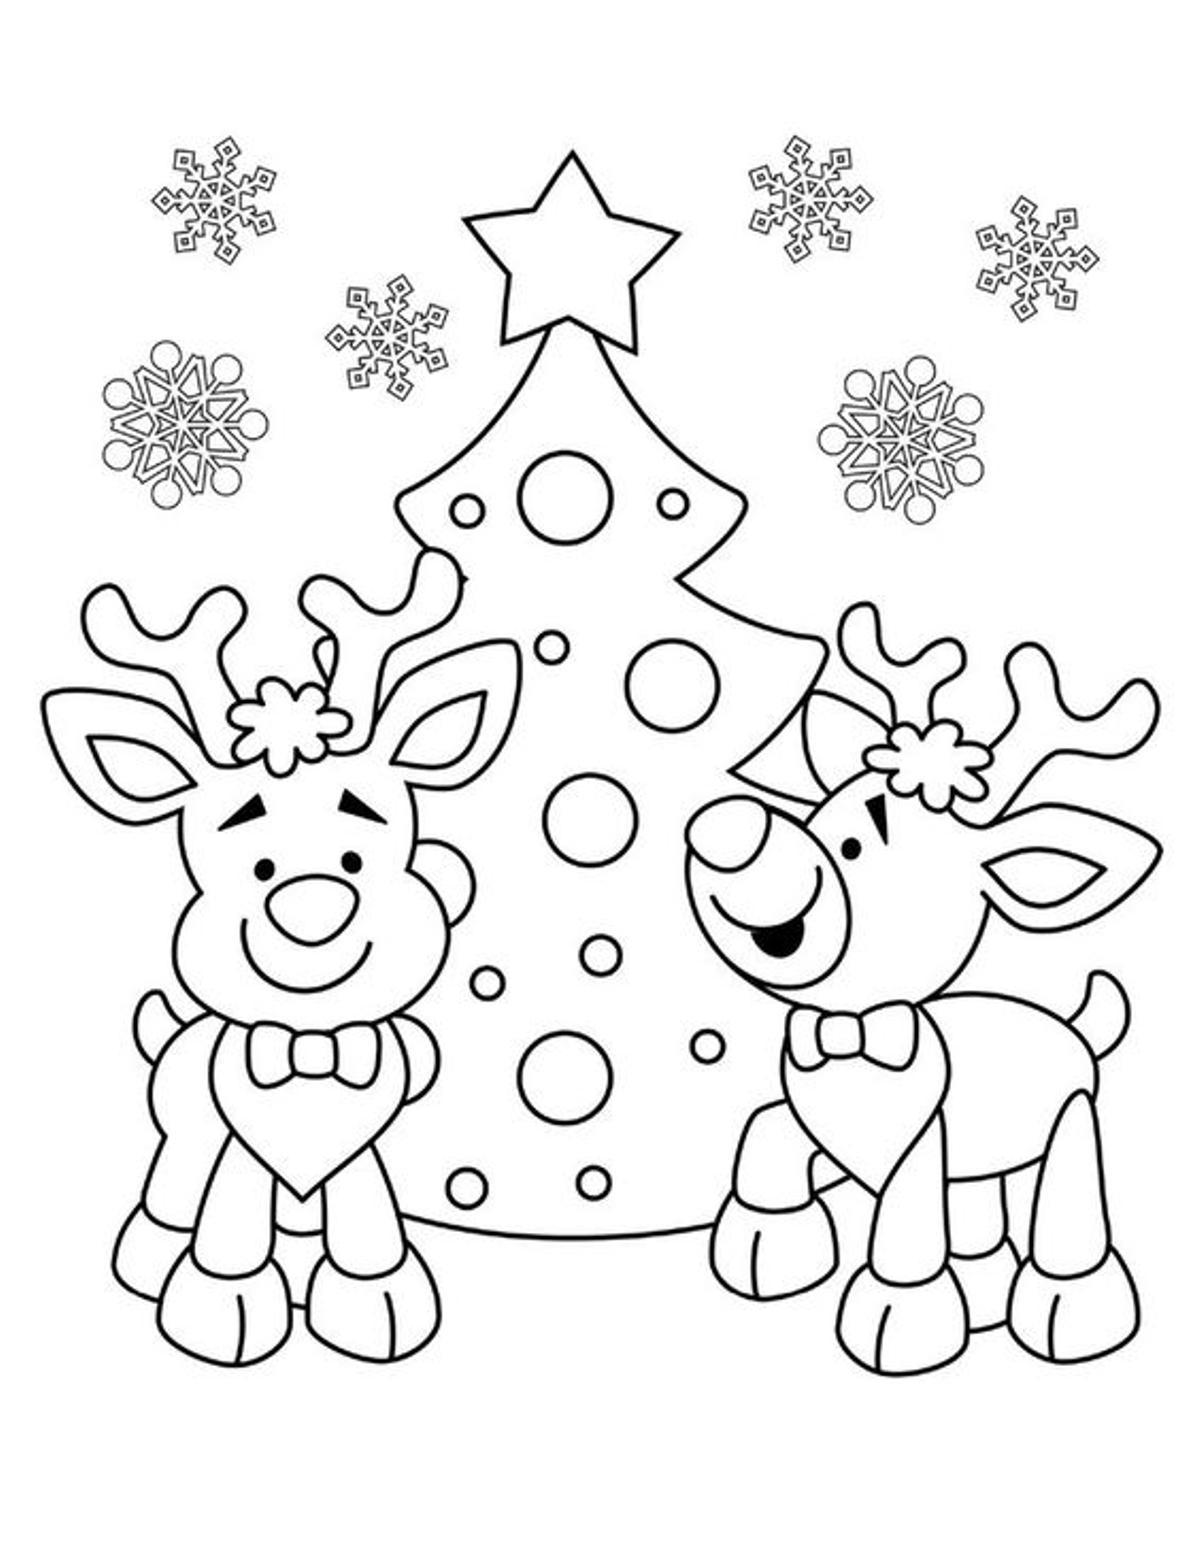 Dibujo de renos para colorear en Navidad.